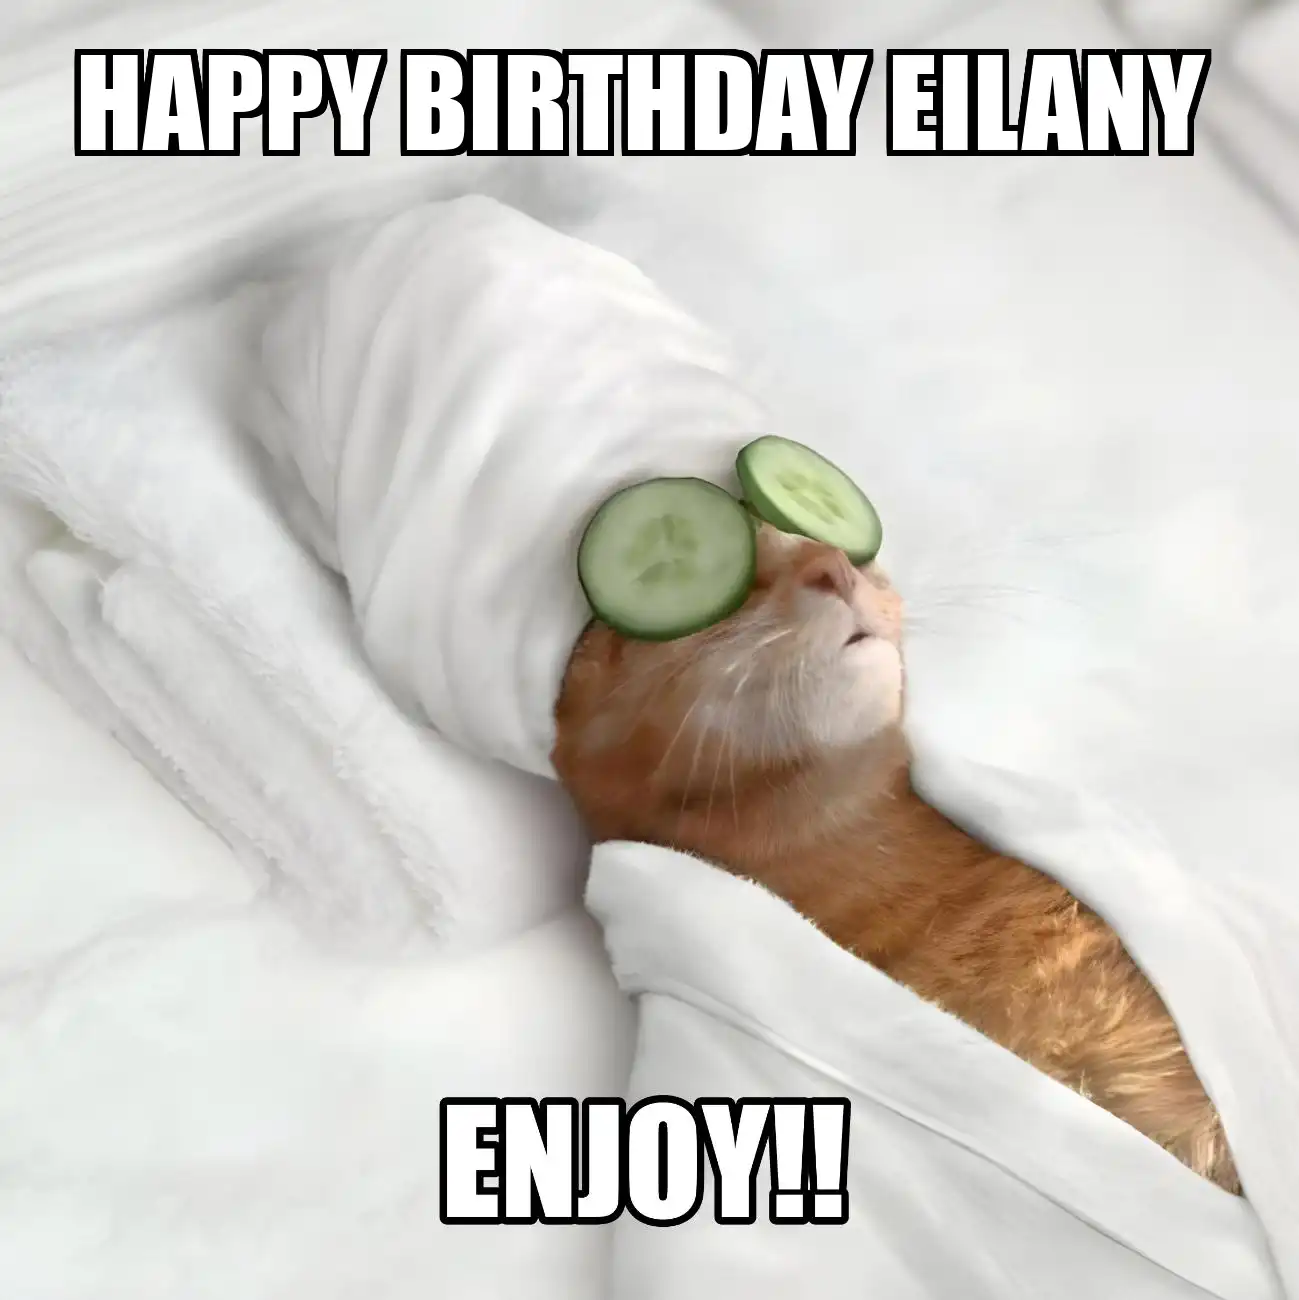 Happy Birthday Eilany Enjoy Cat Meme